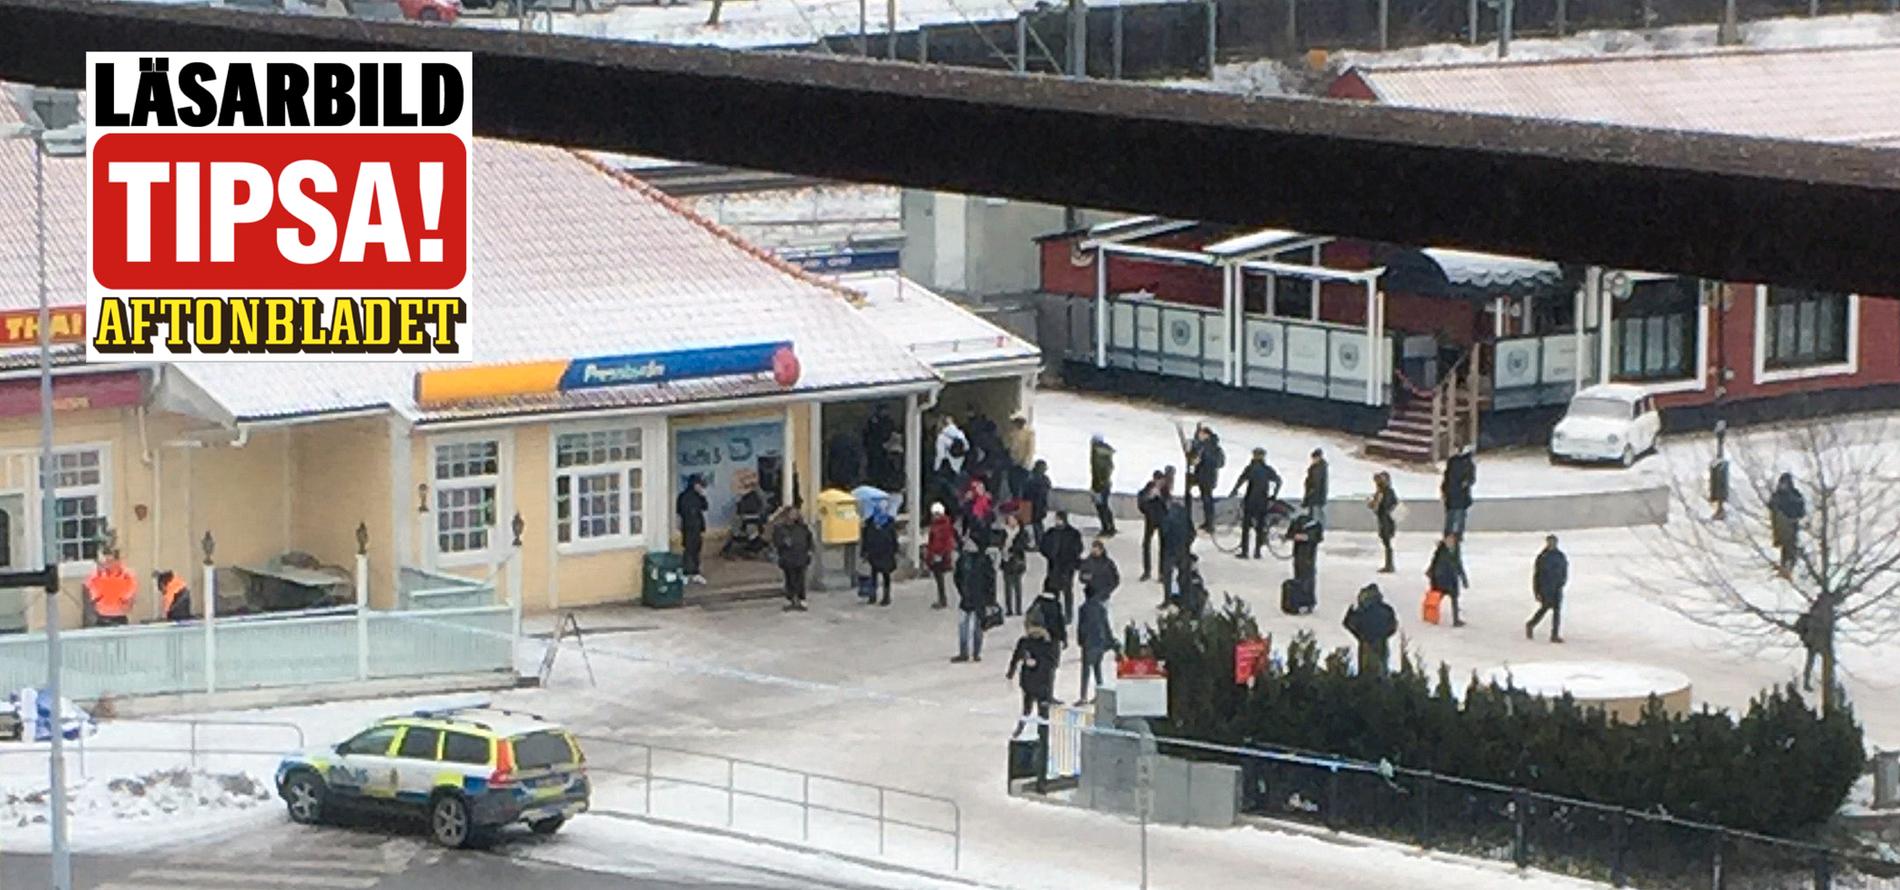 Ett misstänkt föremål har hittats i biljetthallen vid Upplands Väsbys station norr om Stockholm.